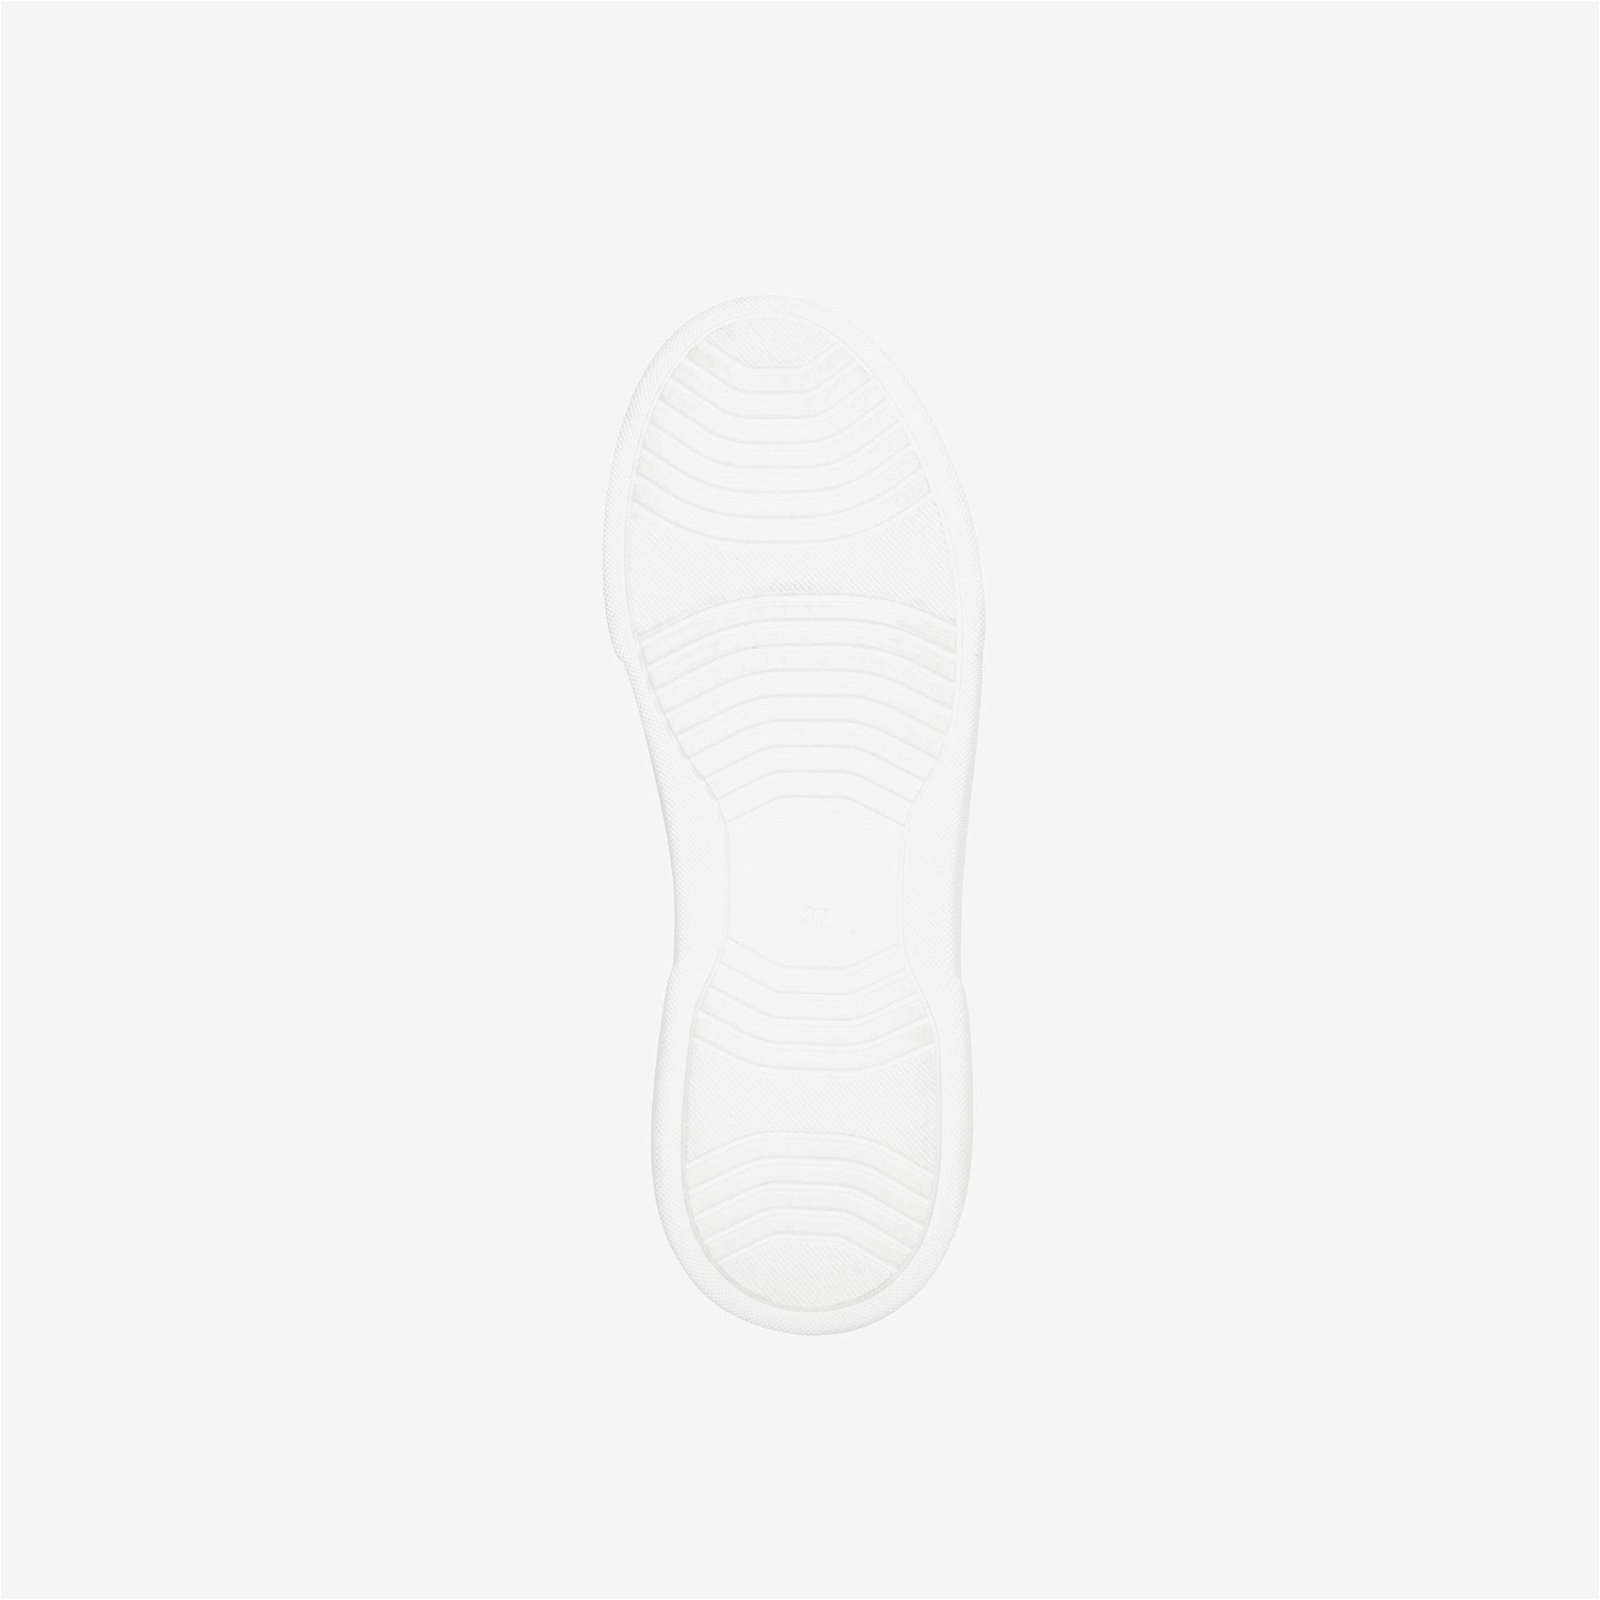 Mario Valentino Stan Summer Kadın Beyaz-Pembe Spor Ayakkabı